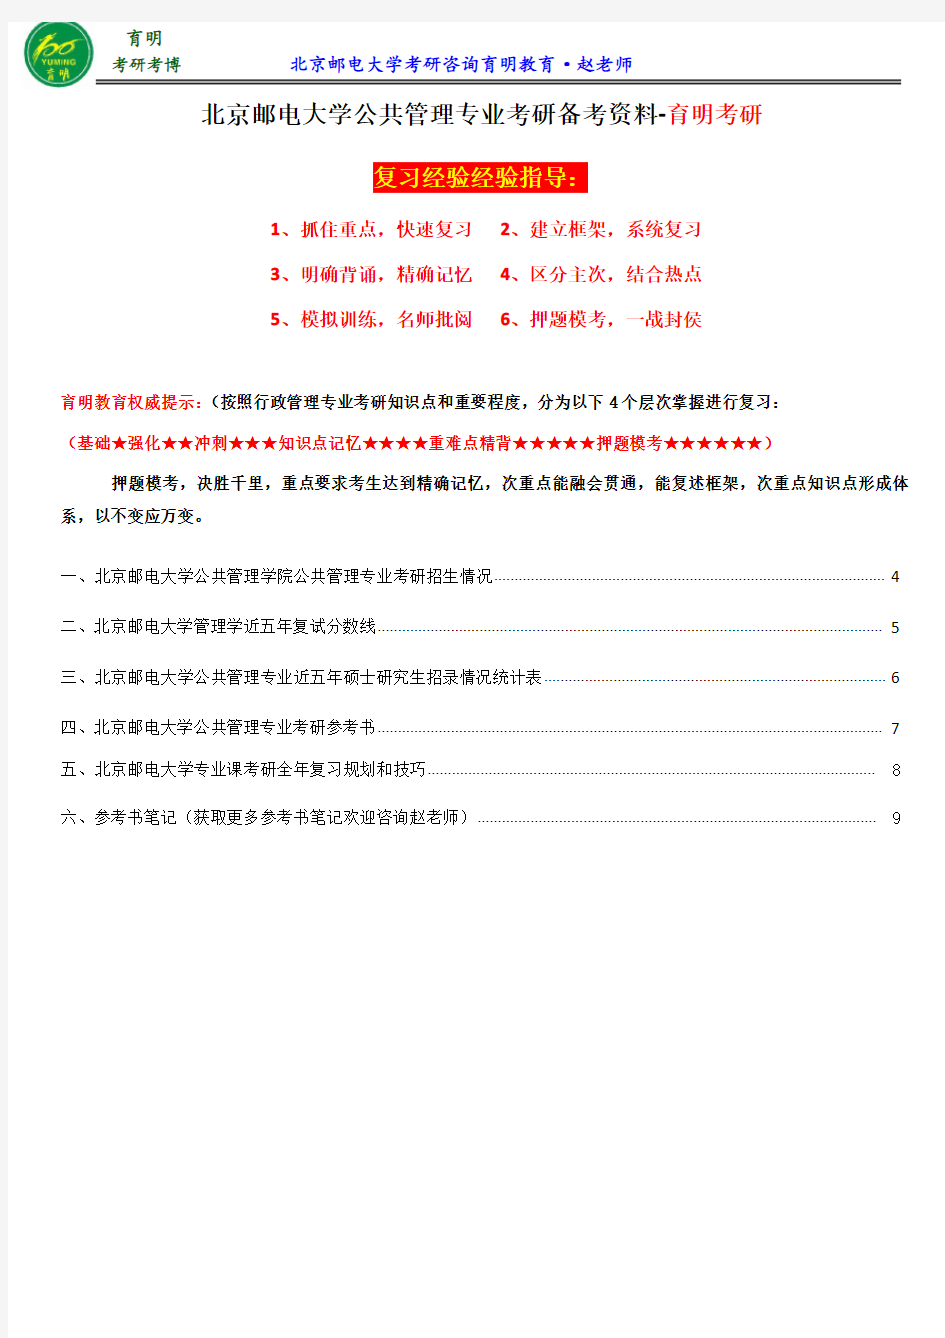 2017北京邮电大学公共管理专业考研参考书、考研辅导、《公共管理学笔记》、权威资料分享